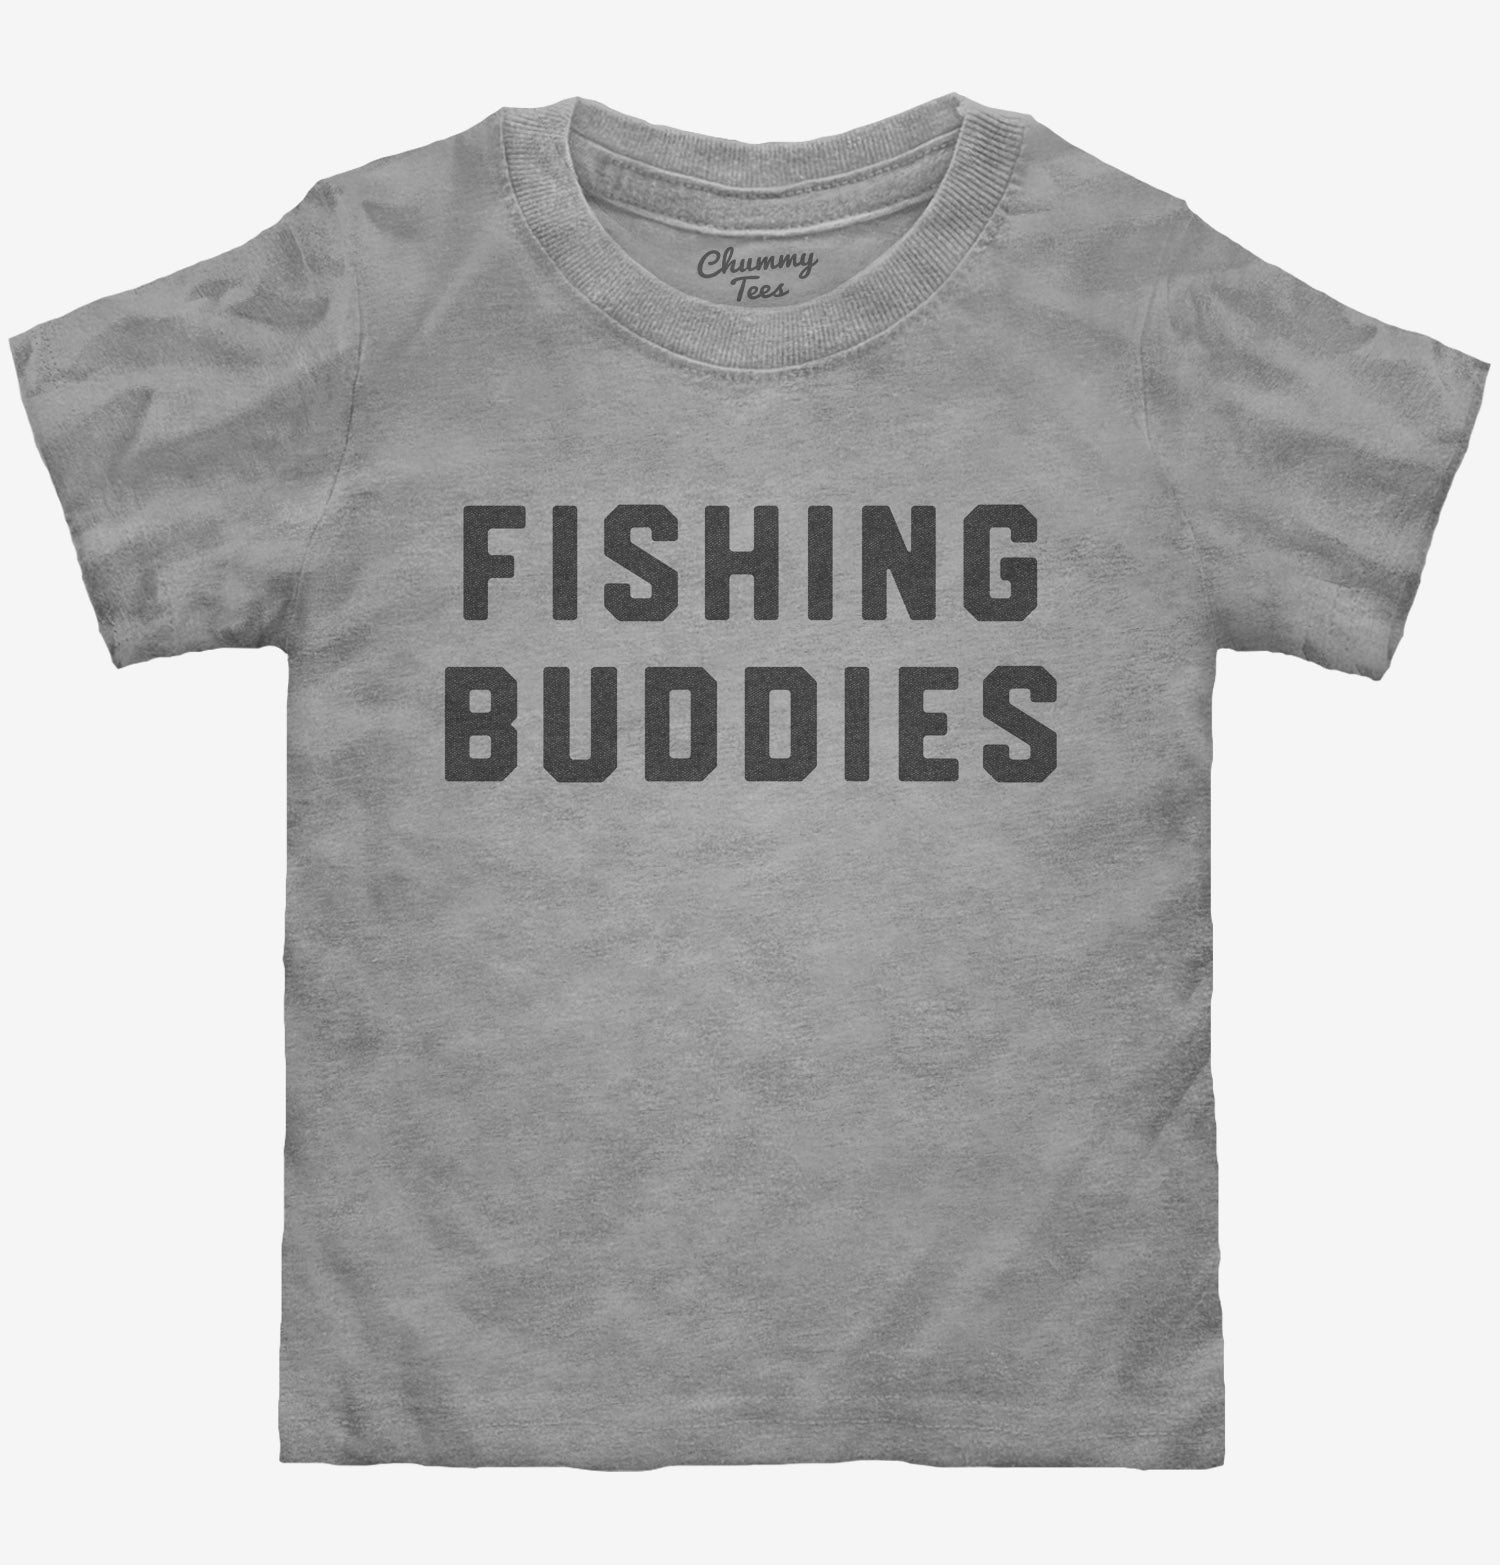 Gone Fishing Gone Fishin T-Shirts Fishing Shirts Fishing Tshirts Fishing  Tees Fishing Shirt Tank Top